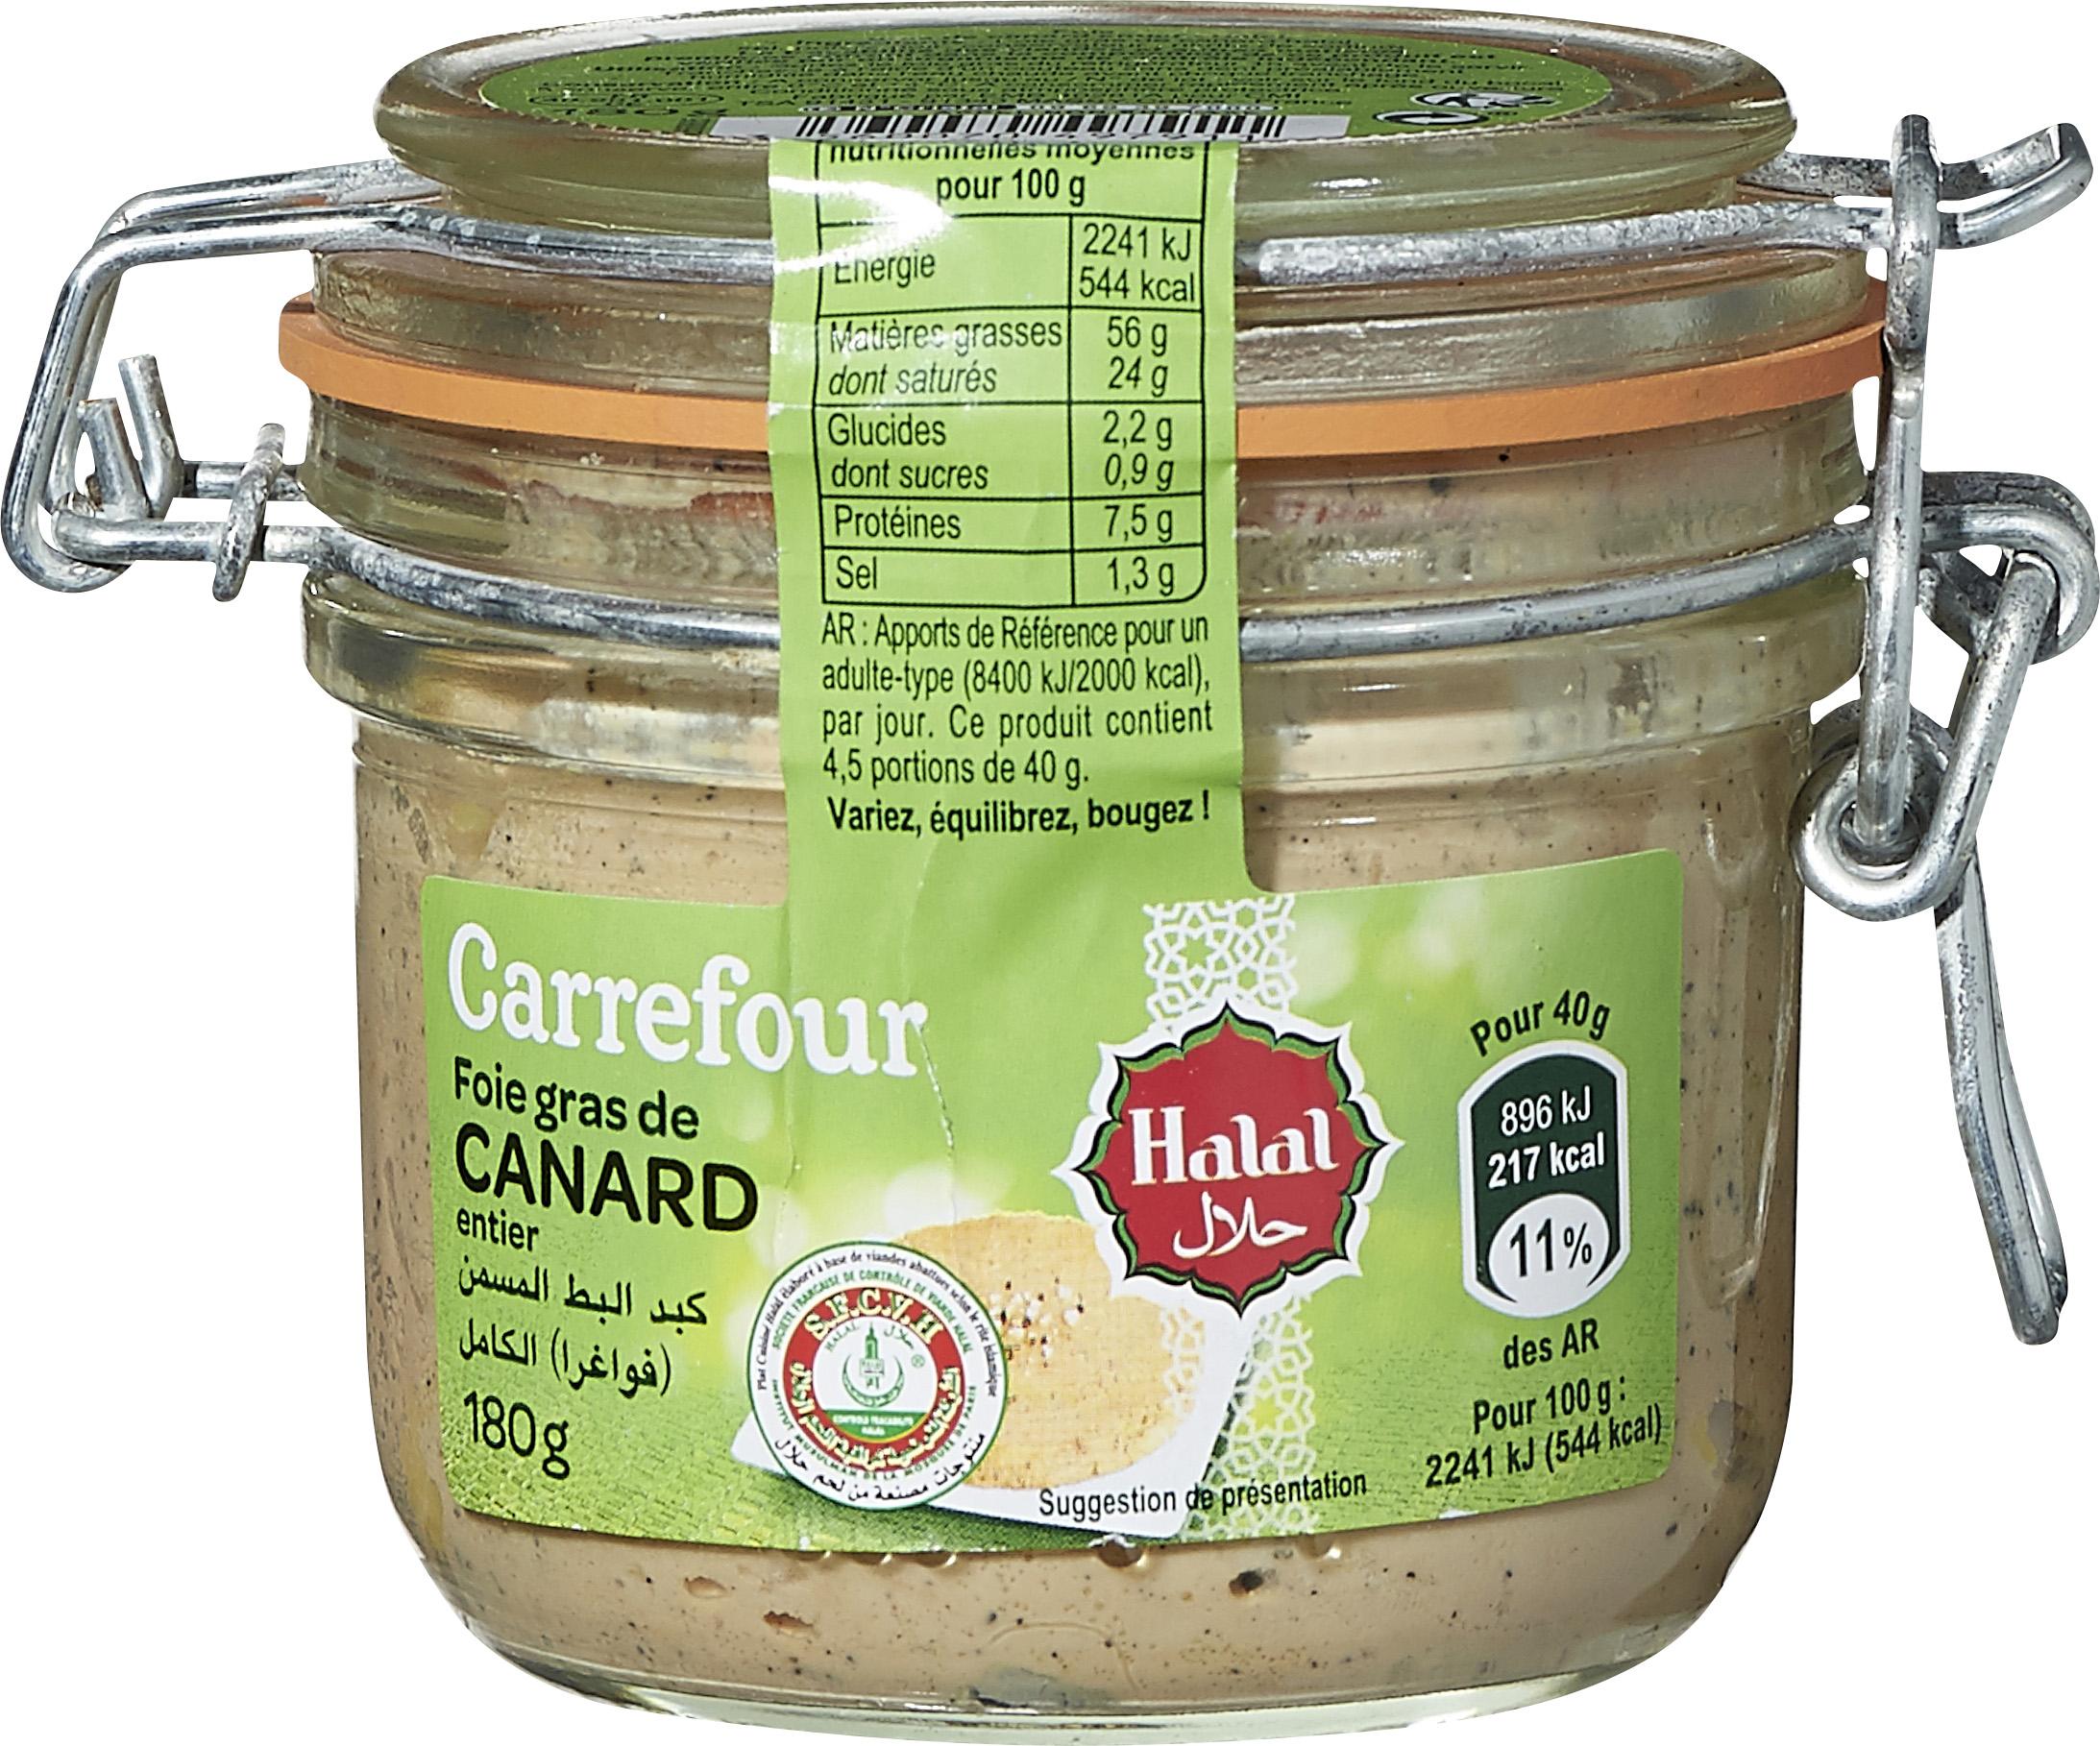 Carrefour Halal - FOIE GRAS CANARD ENTIER HALAL / 180G